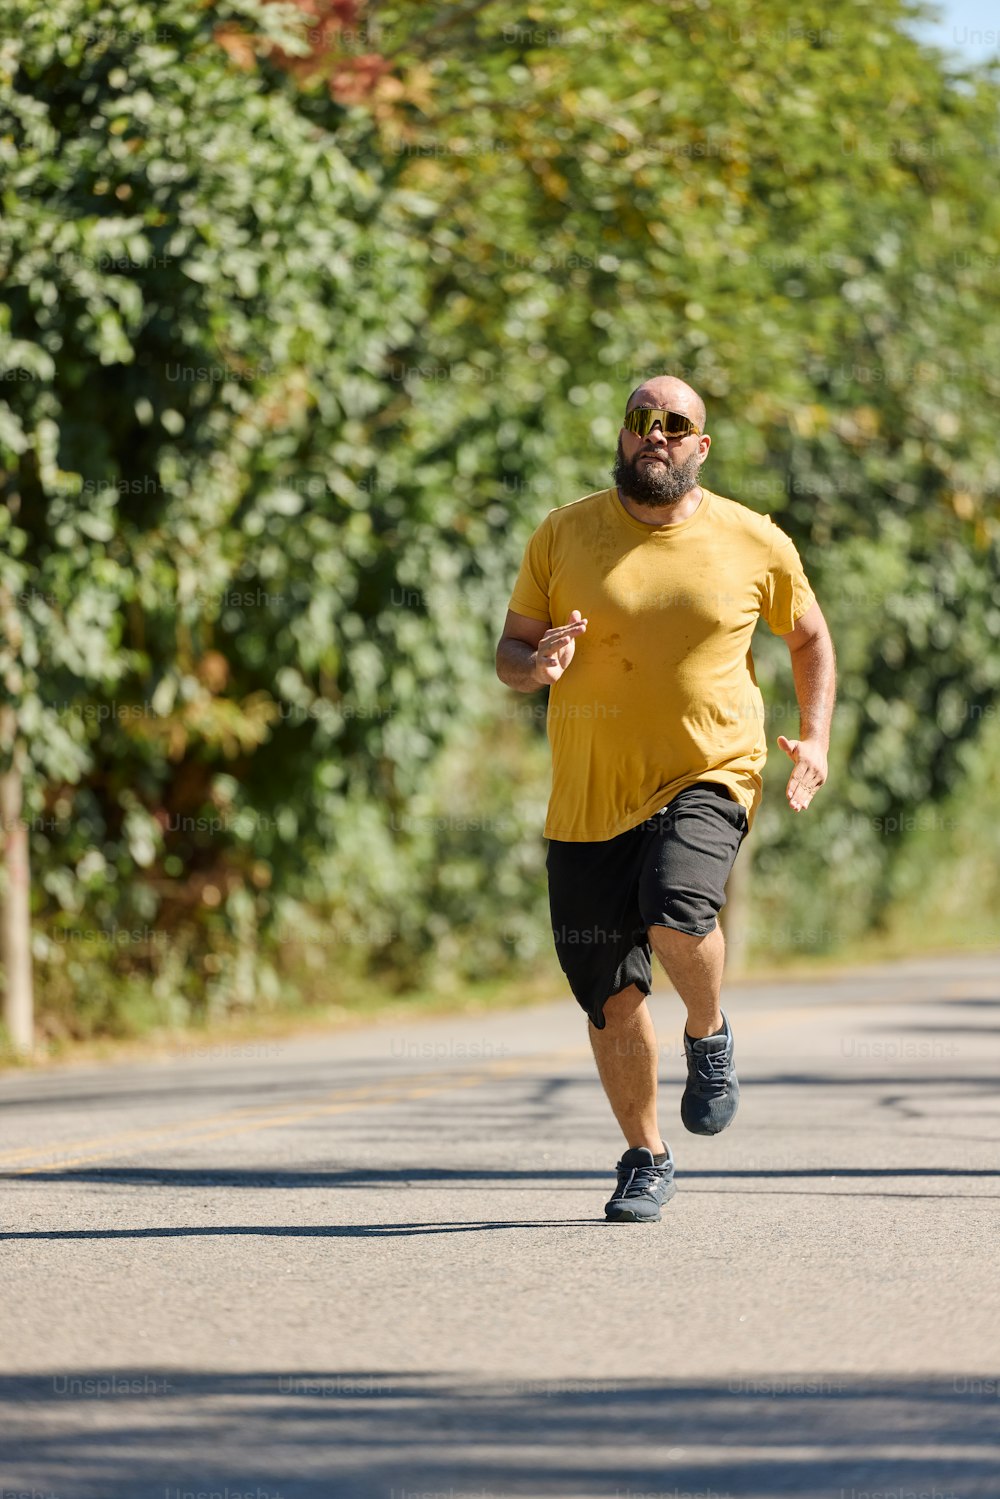 a man in a yellow shirt running down a street